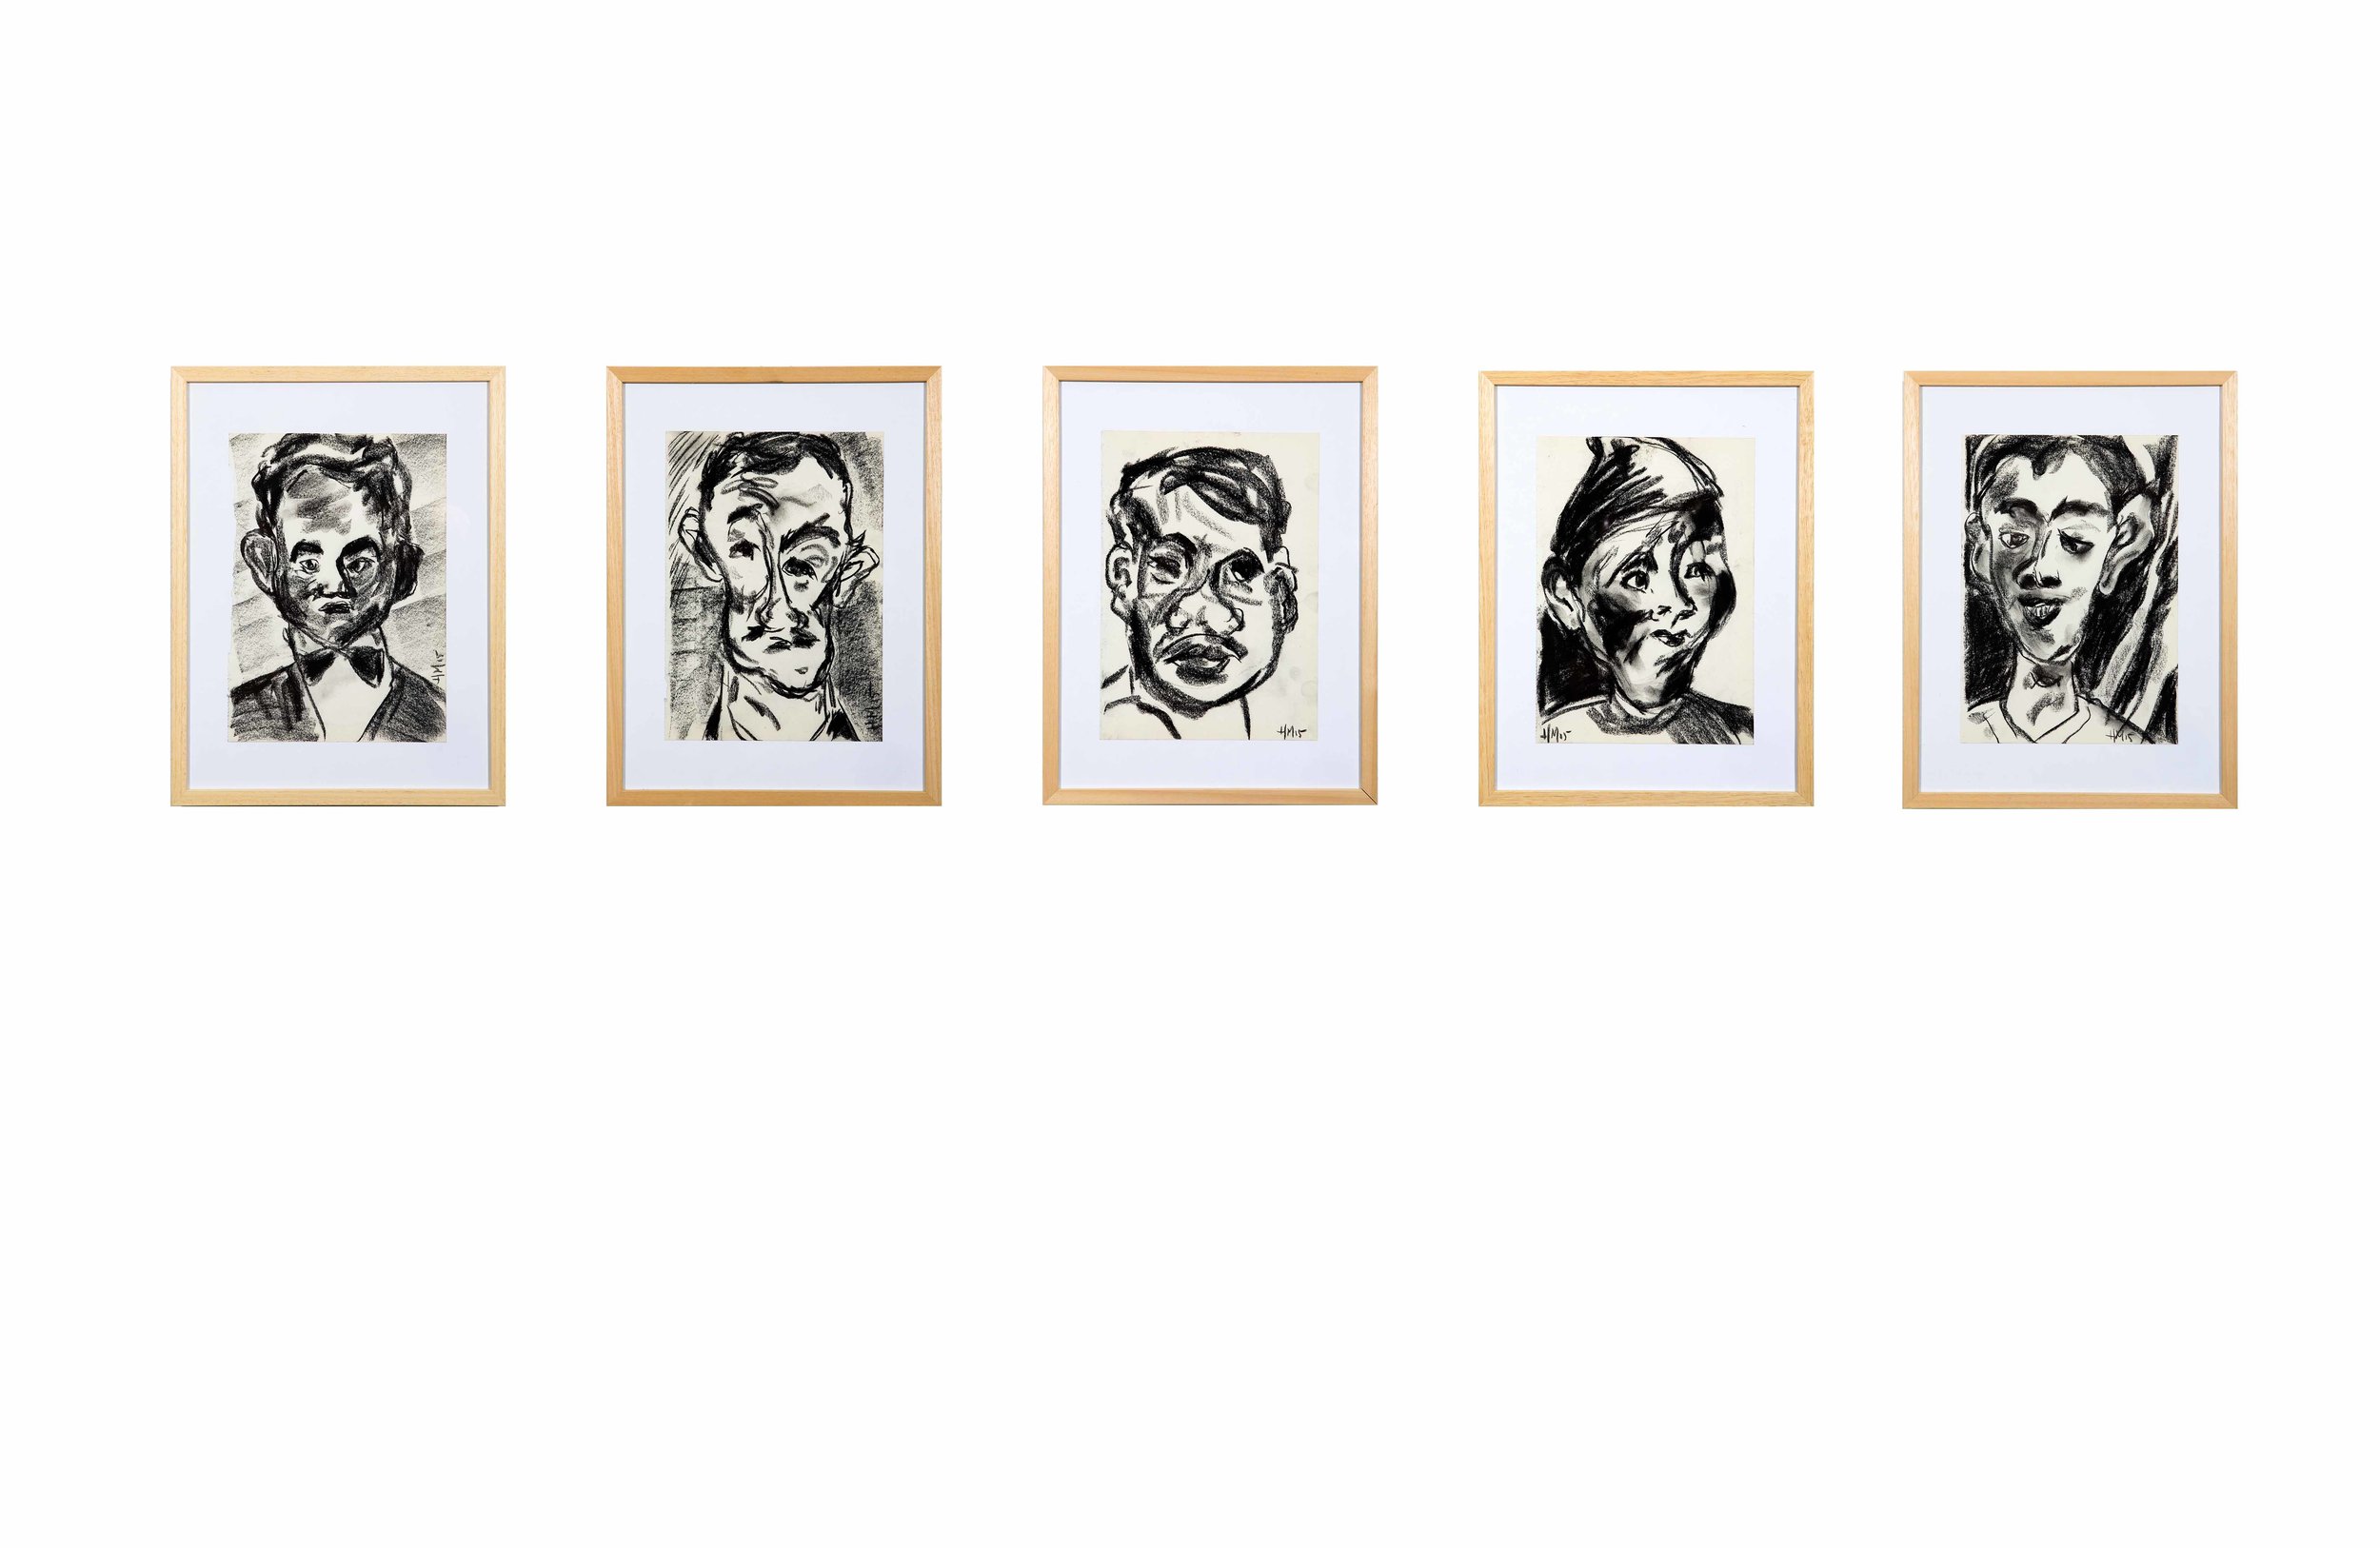   Koppen naar Chaim Soutine 1, 2, 3, 4, 5   2015  krijt op papier  21 x 30 cm  nr 2 private collection             